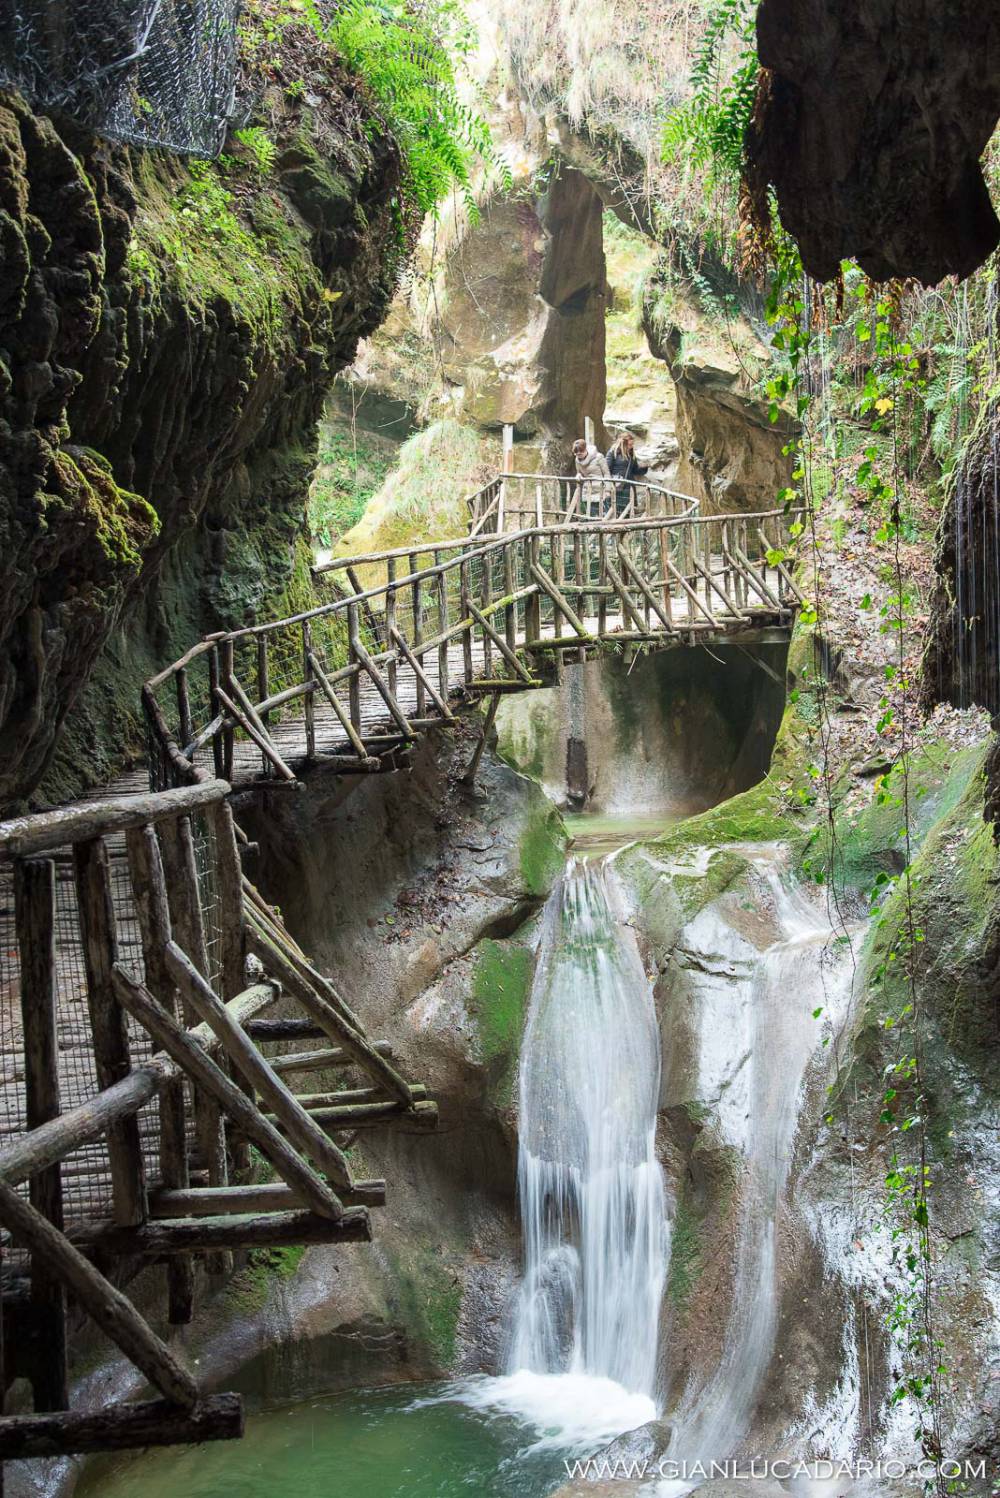 Le grotte del Caglieron - Fregona - foto 3 - Gianluca Dario Photography